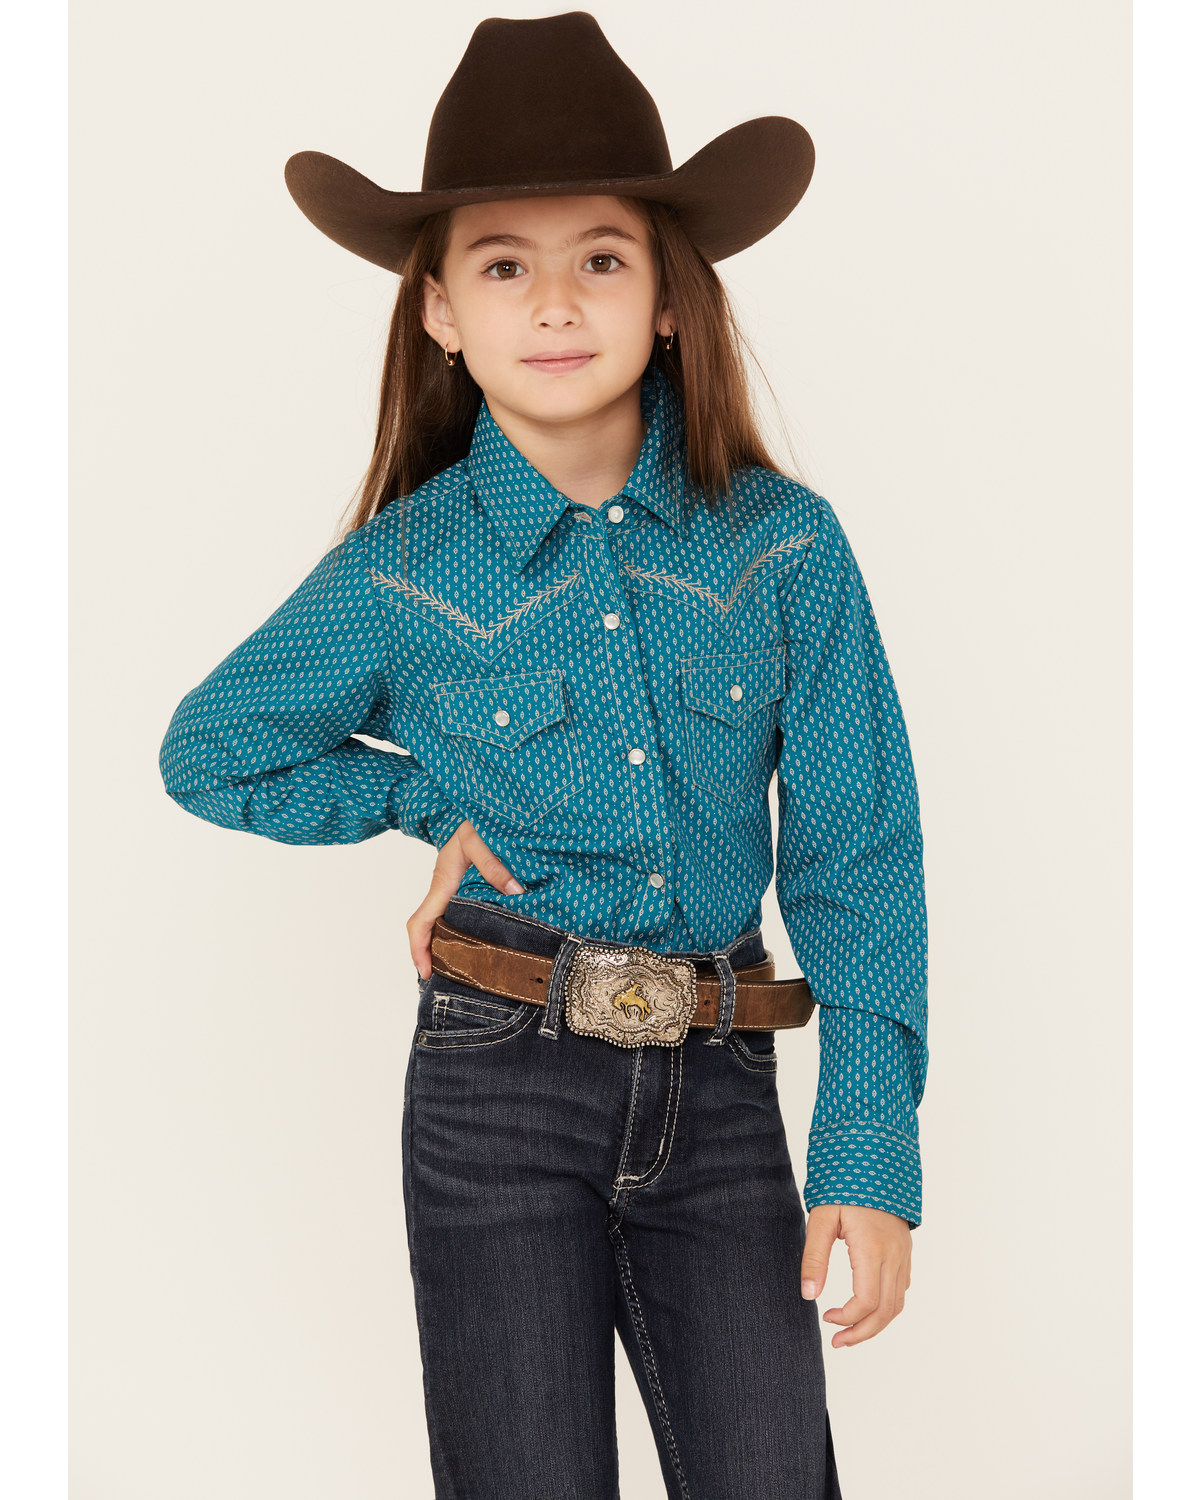 Ely Walker Girls' Southwestern Print Long Sleeve Pearl Snap Western Shirt